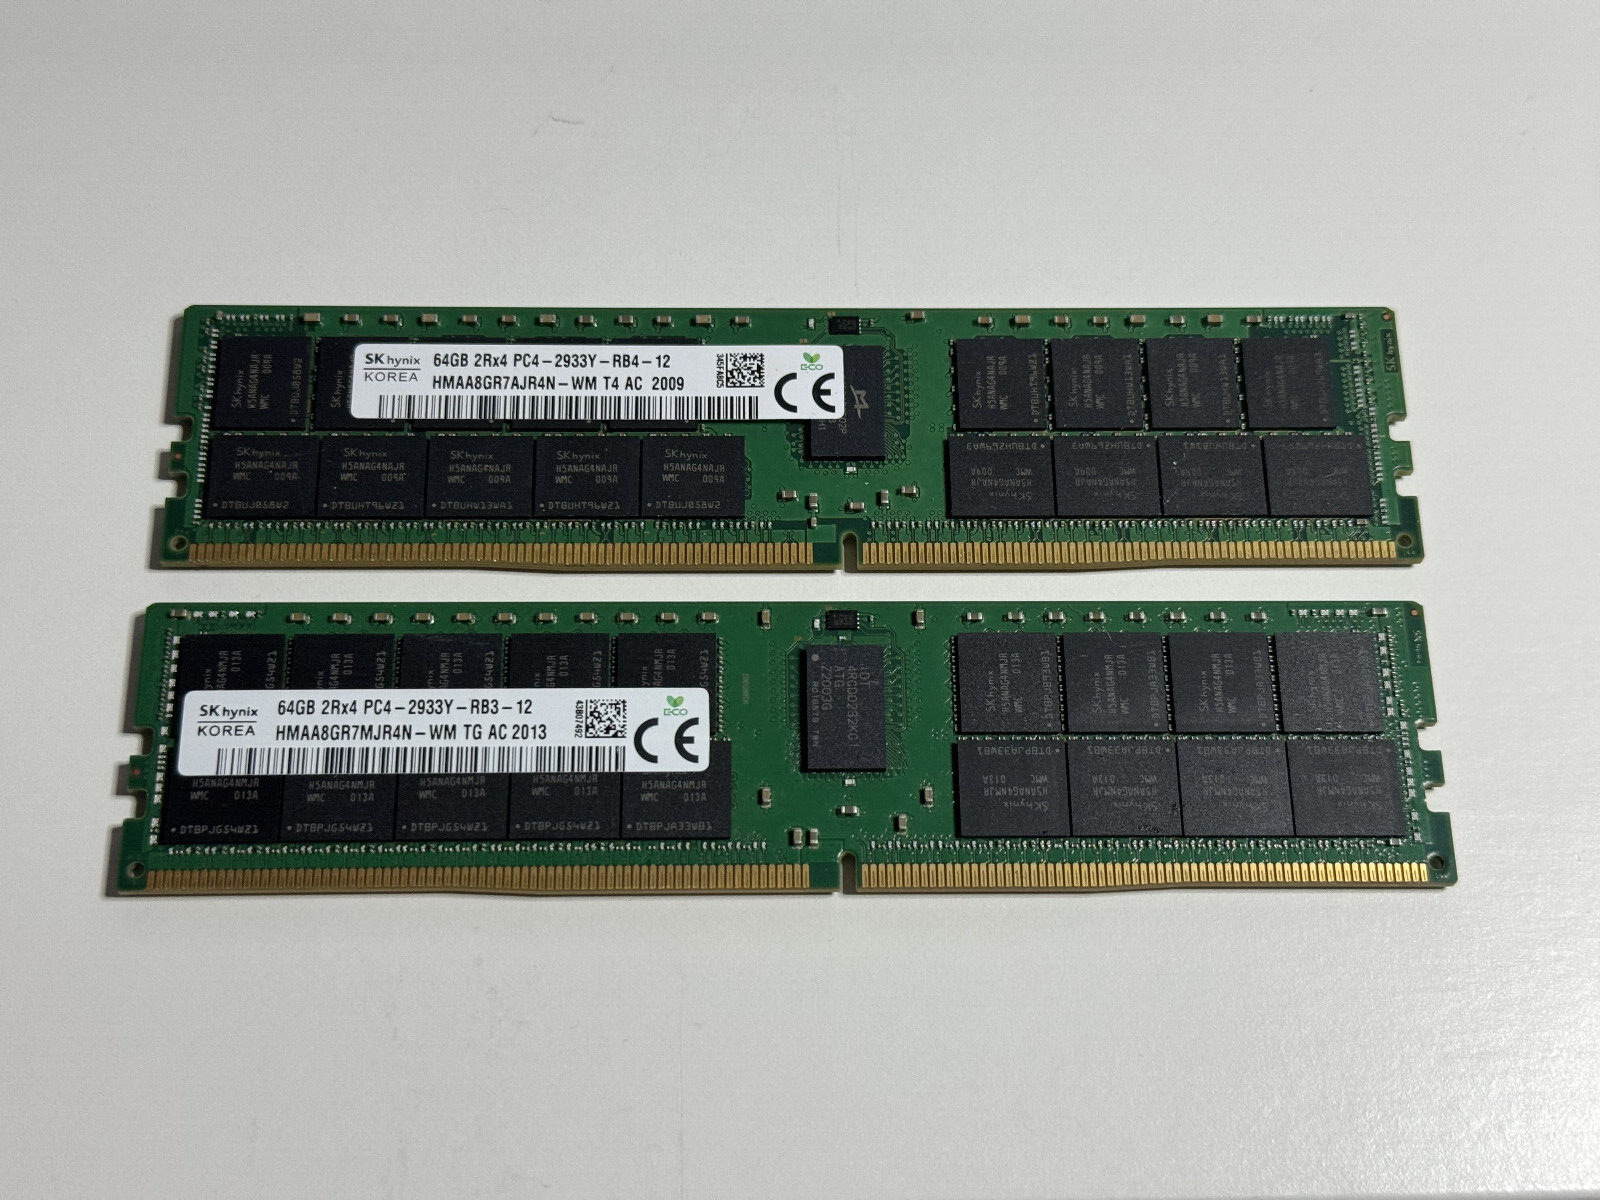 Used - SK Hynix 64GB 2Rx4 PC4-2933Y Server RAM Memory